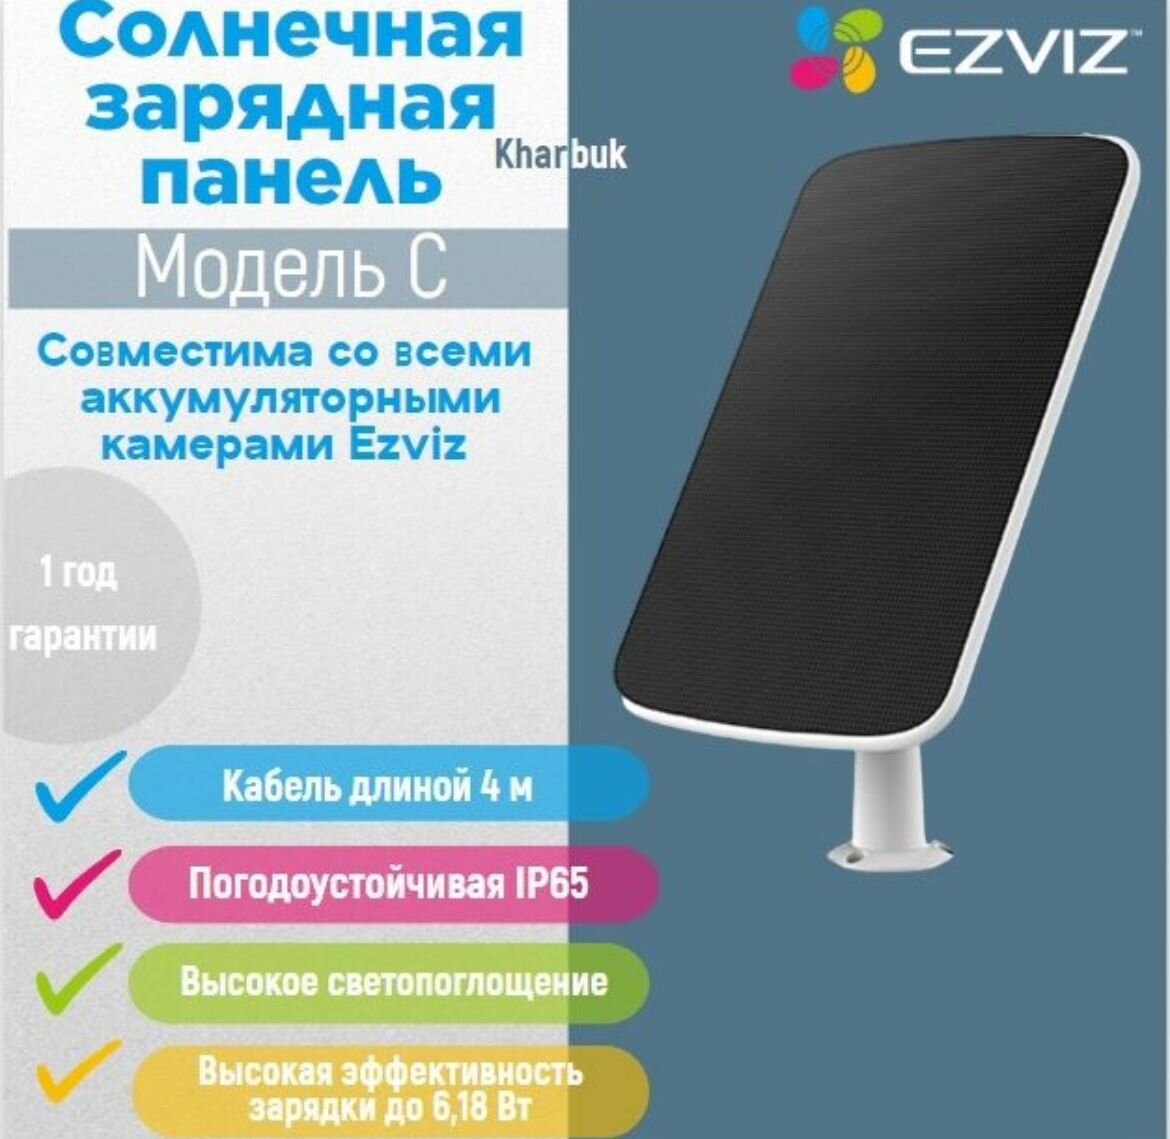 Солнечная зарядная панель Ezviz модель - С